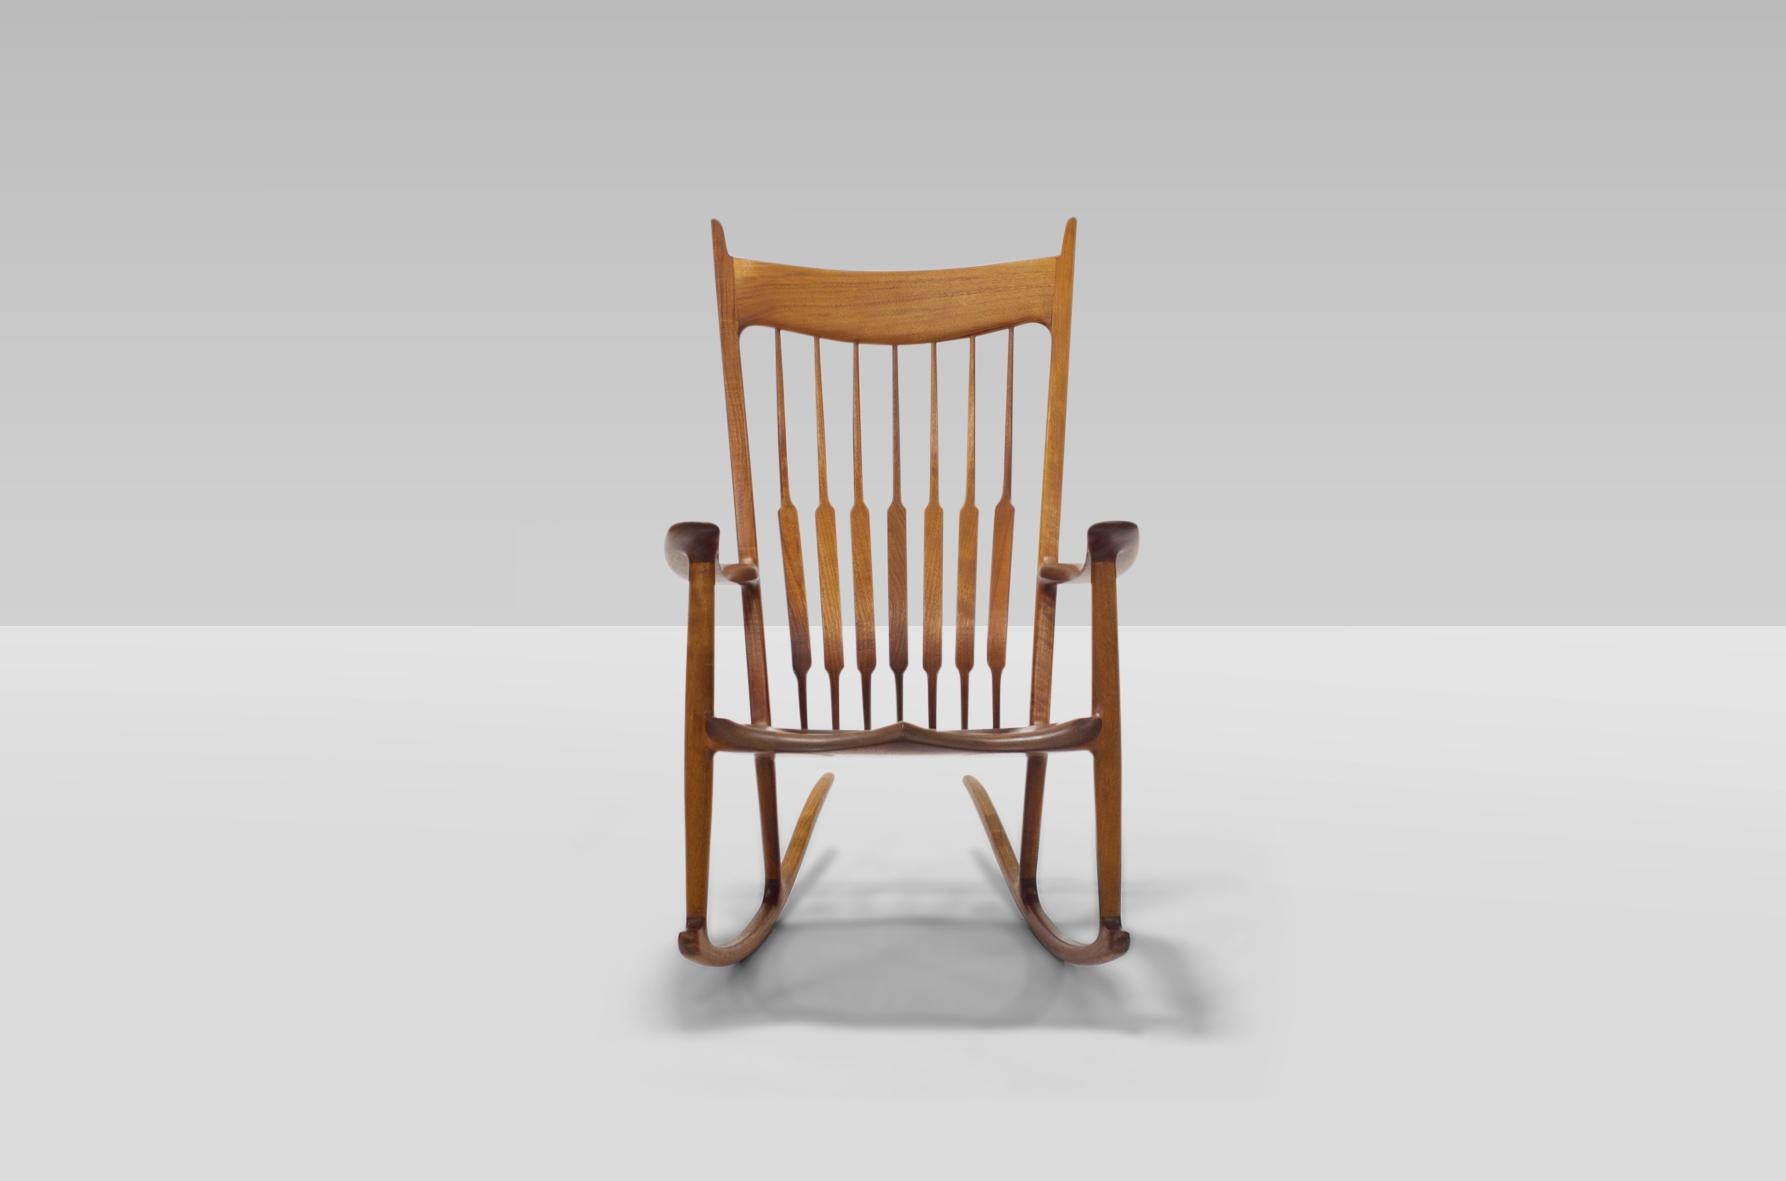 Schöner, ikonischer und perfekt ausgeführter früher Sam Maloof Rocker aus Nussbaumholz von 1979.  Ein ganz besonderer Stuhl mit außergewöhnlicher Provenienz und in hervorragendem Originalzustand. Signiert, datiert und mit einem speziellen